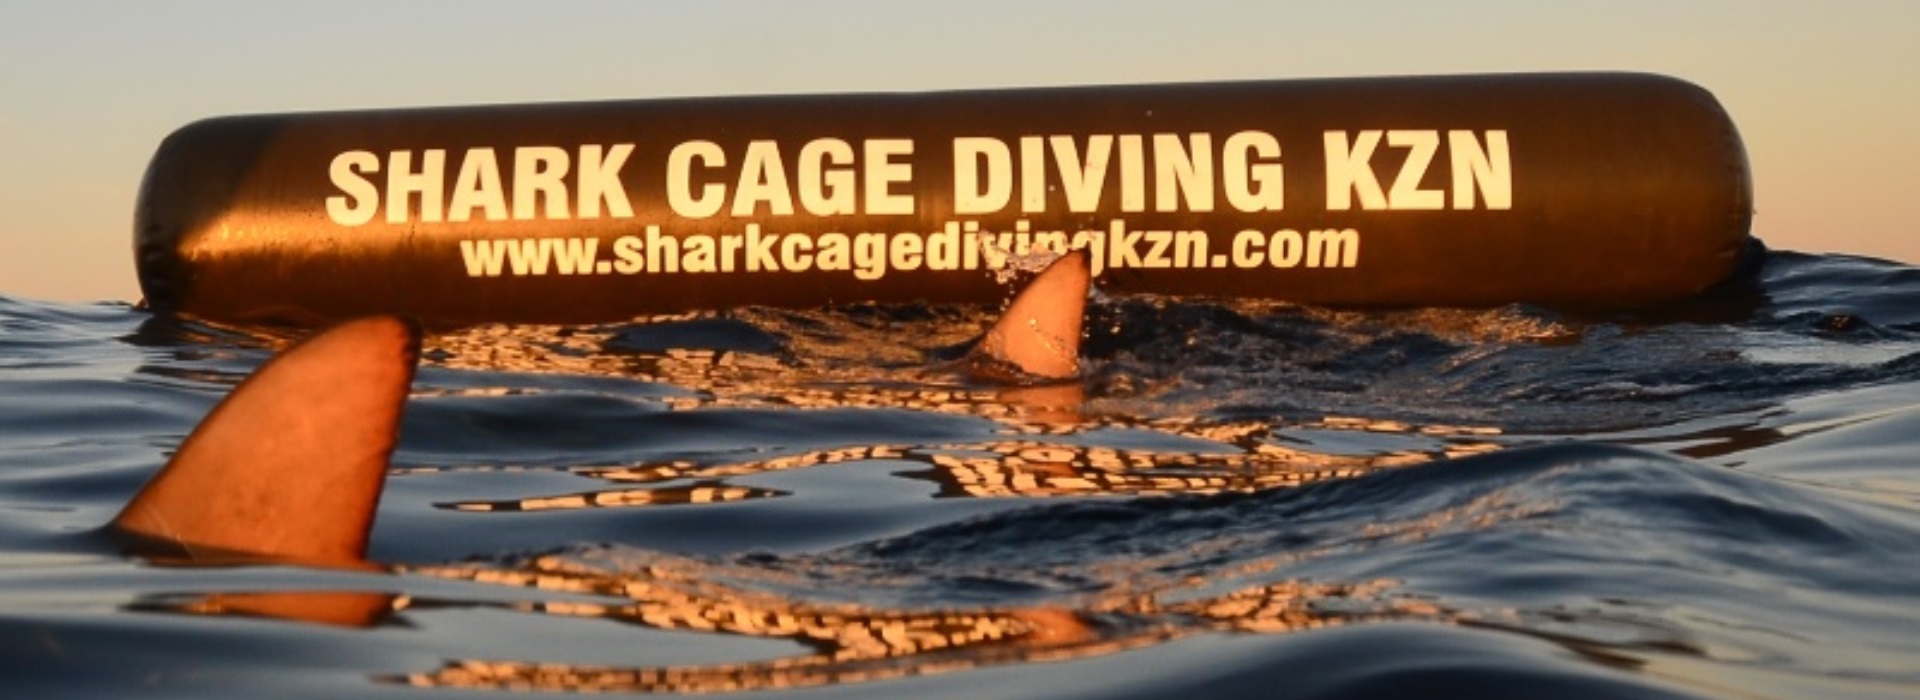 shark cage diving kzn - aliwal shoal - durban